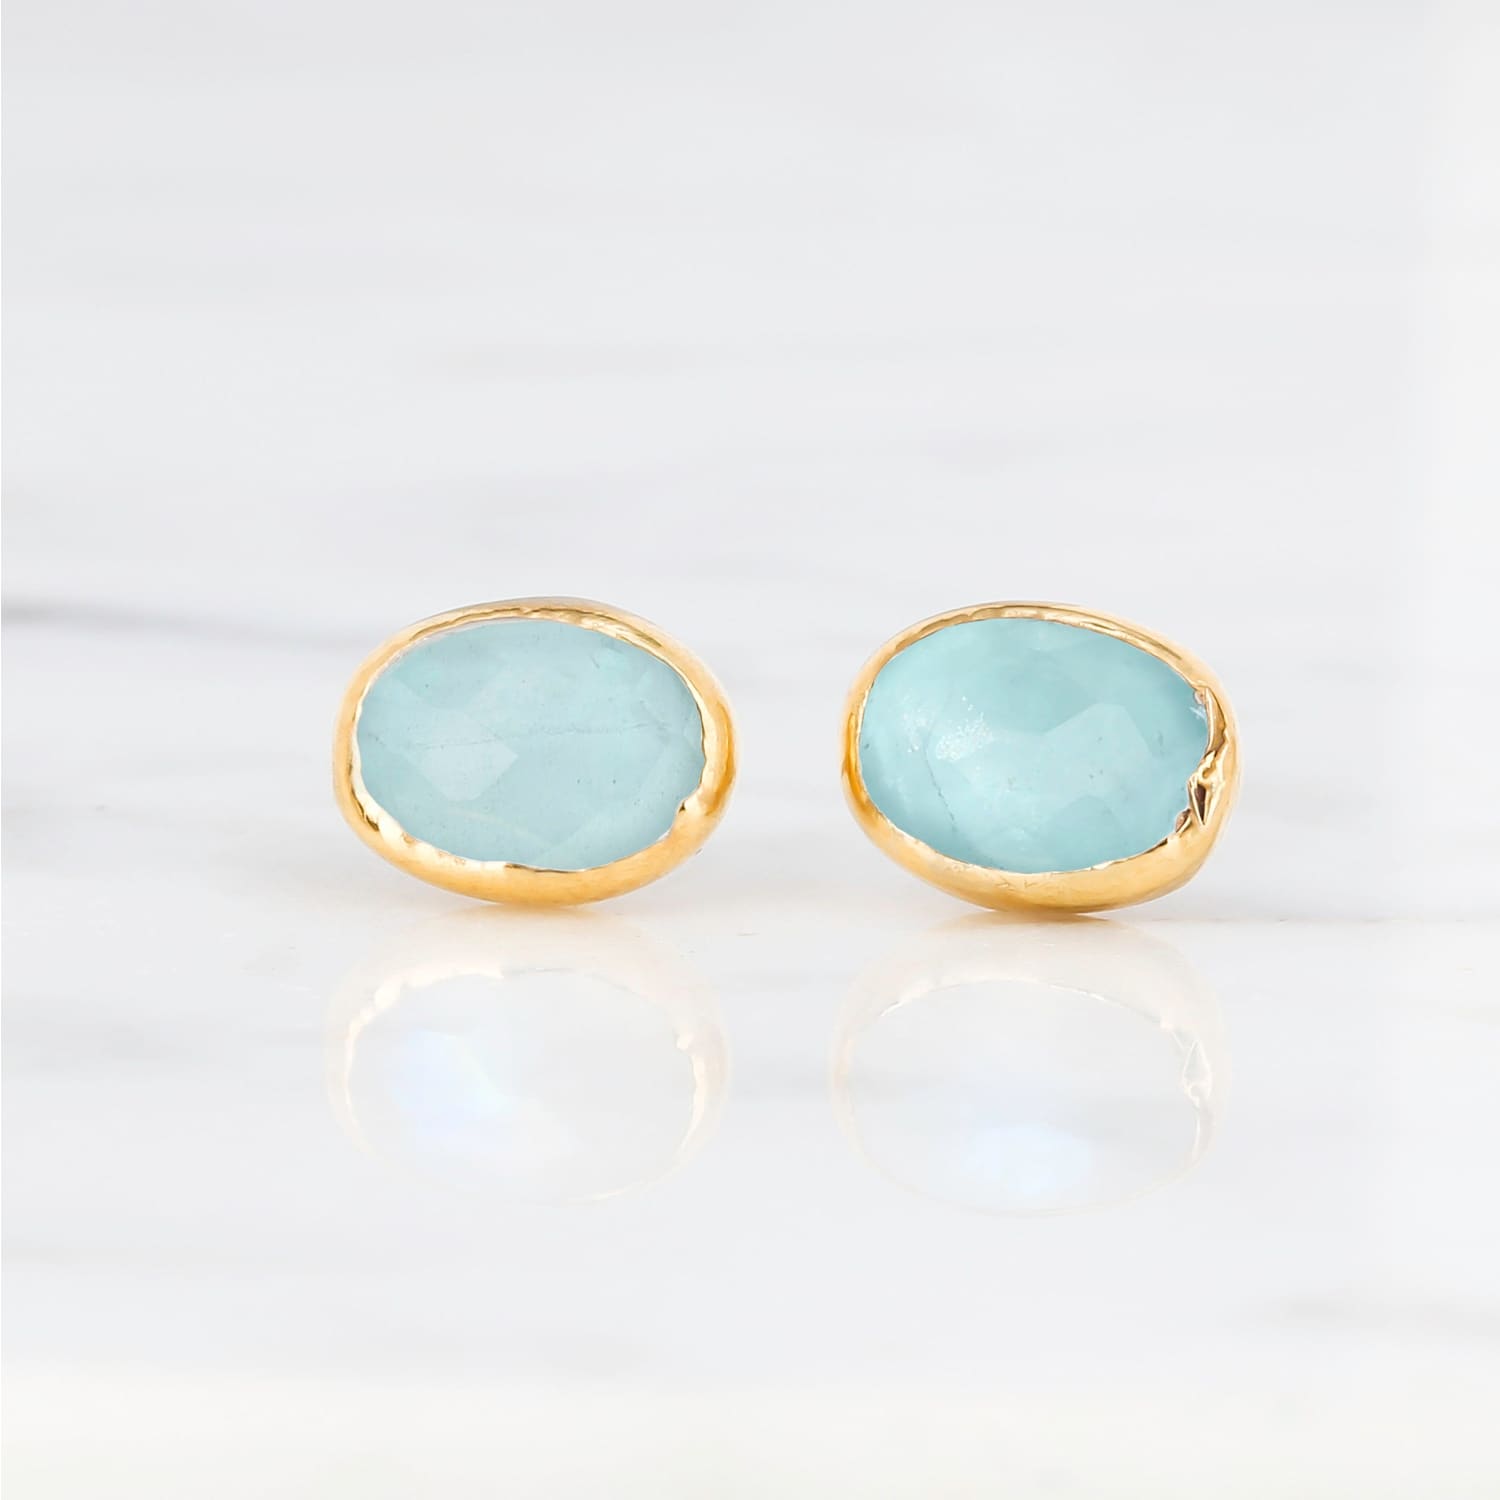 Oval Aquamarine Earrings • Gold Filled • Minimalist Stud •